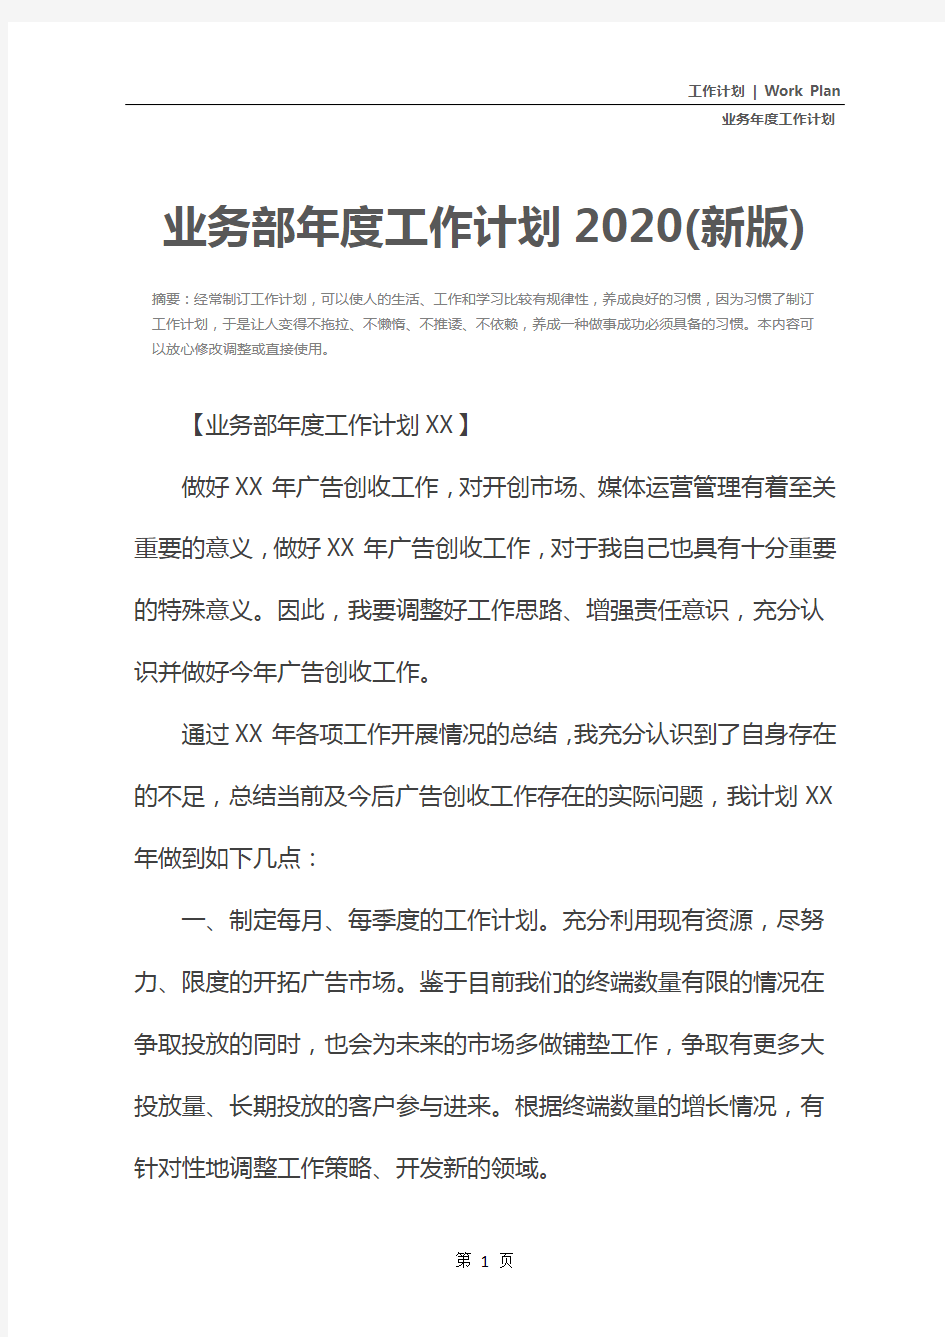 业务部年度工作计划2020(新版)